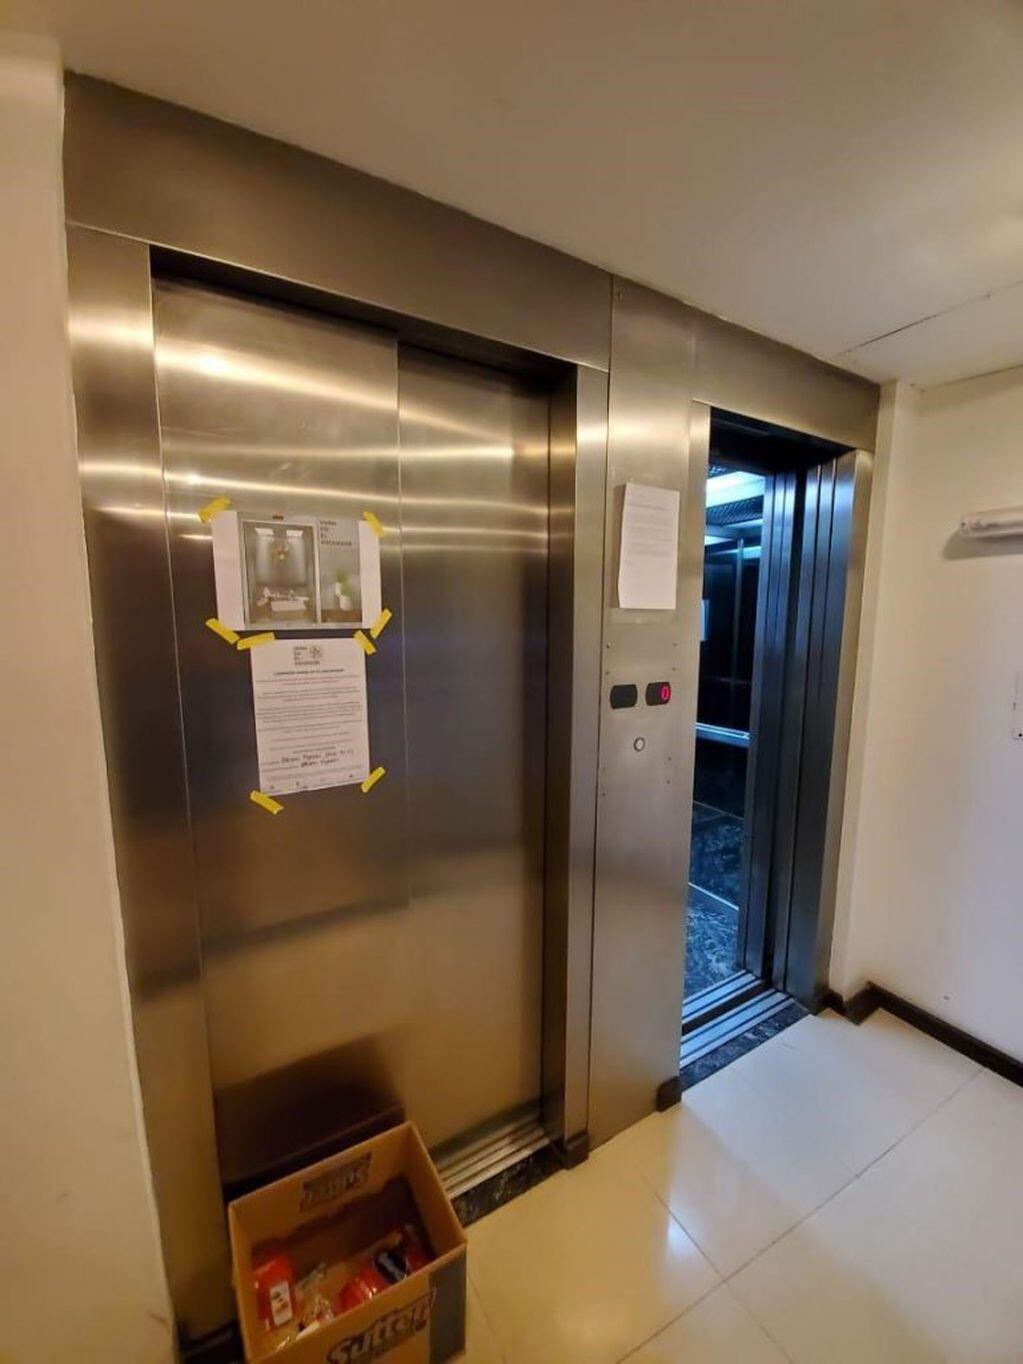 La iniciativa "Doná en el ascensor" se replica en una veintena de edificios de Rosario. (Vía Rosario)